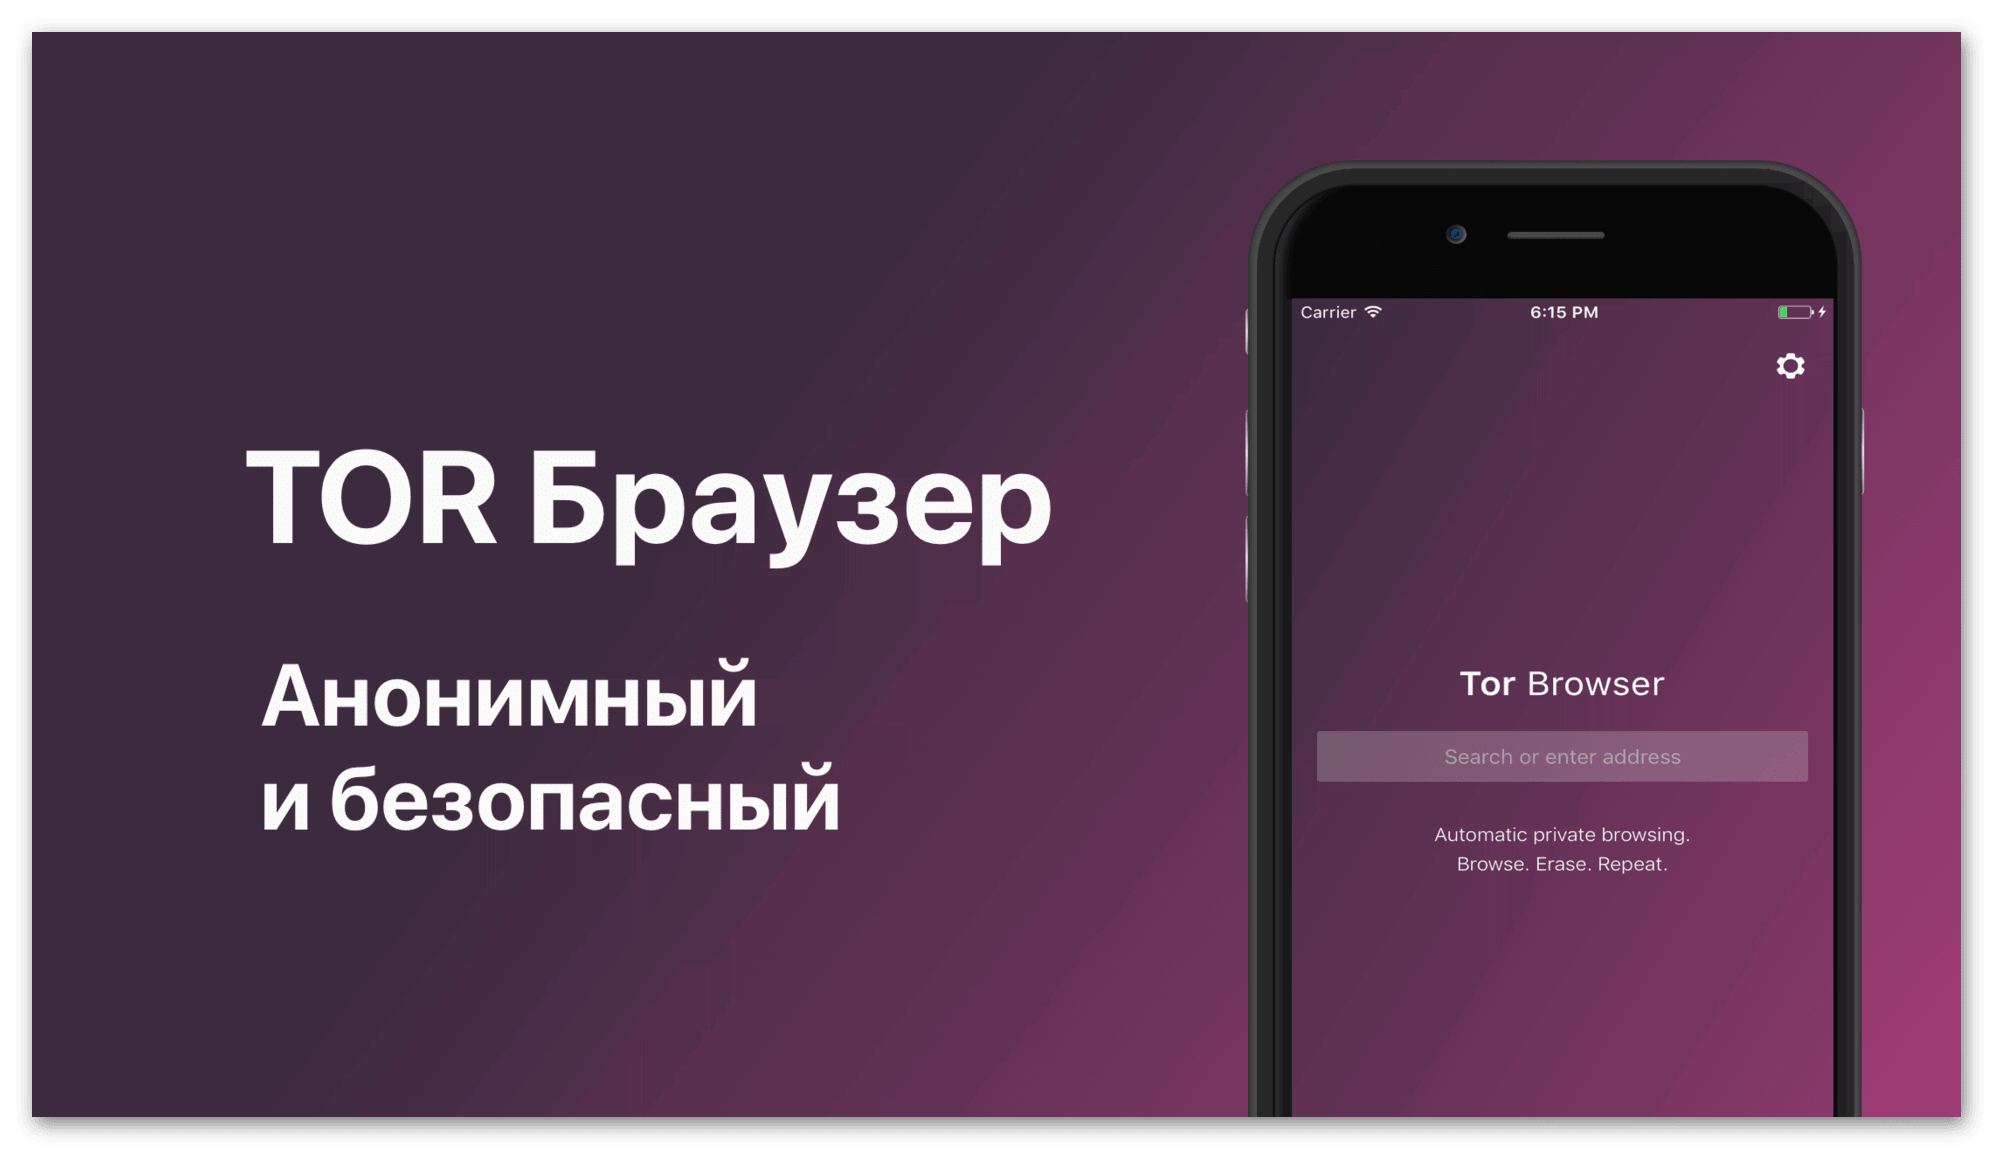 Бесплатный тор браузер для iphone mega скачать тор браузер для планшета на русском скачать бесплатно megaruzxpnew4af